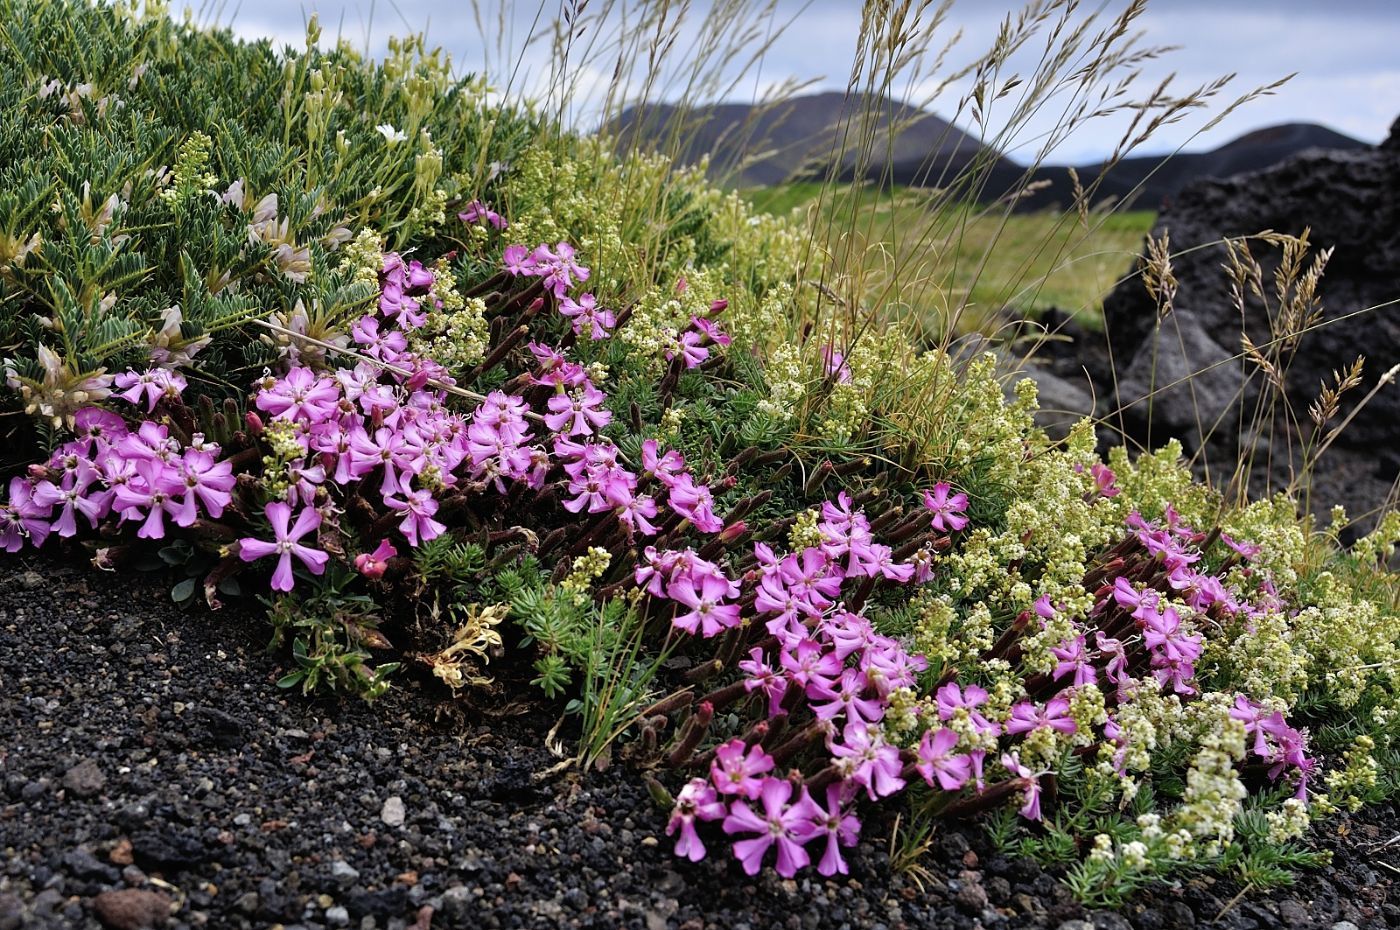 Galium aetnicum - Astragalus siculus - Saponaria officinalis on Mount Etna volcano